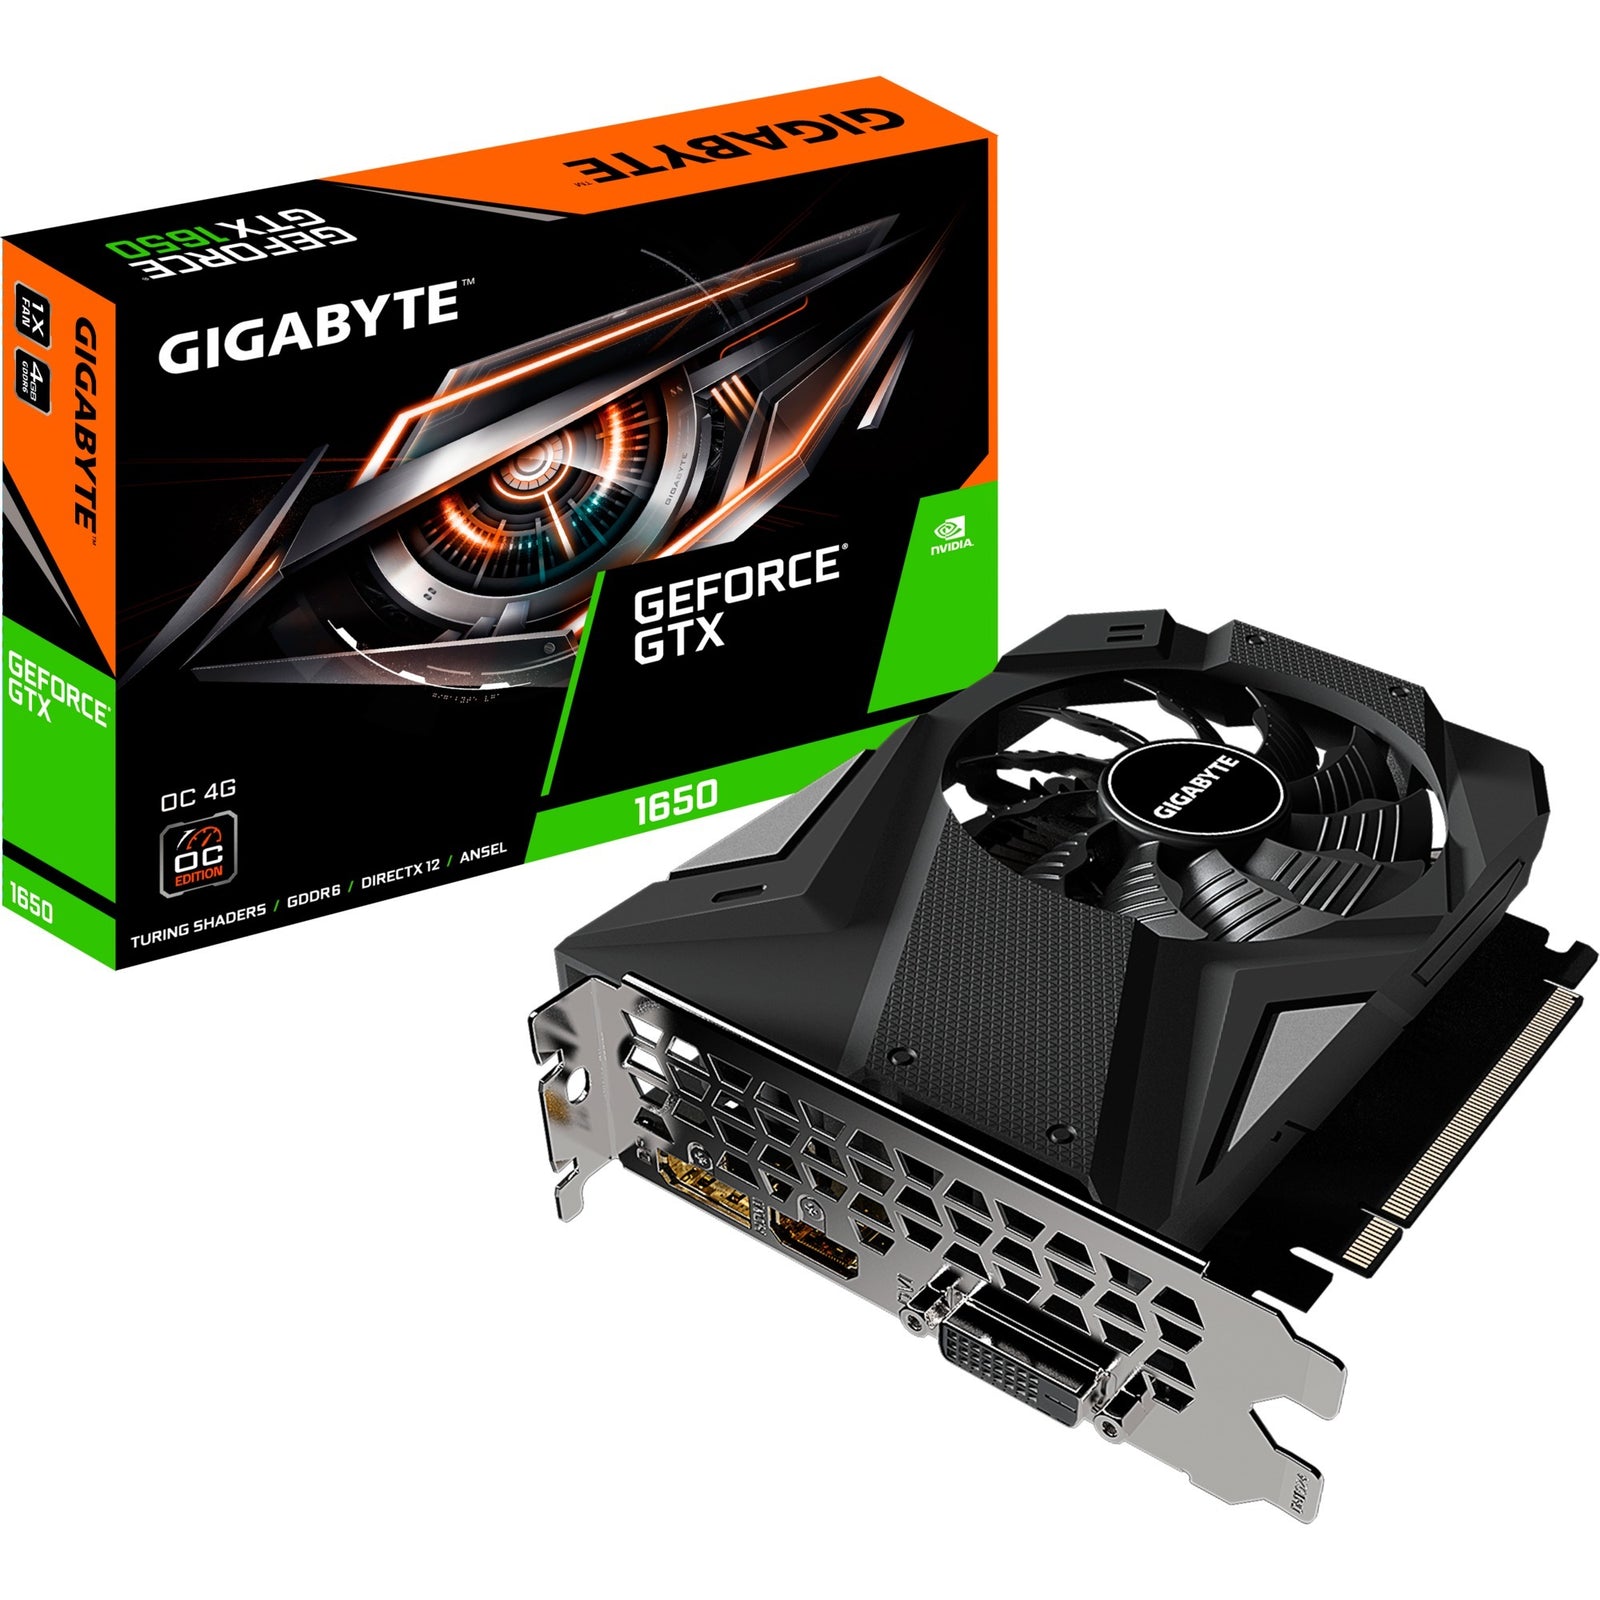 GIGABYTE GIGABYTE GeForce GTX 1650 D6 OC 4G